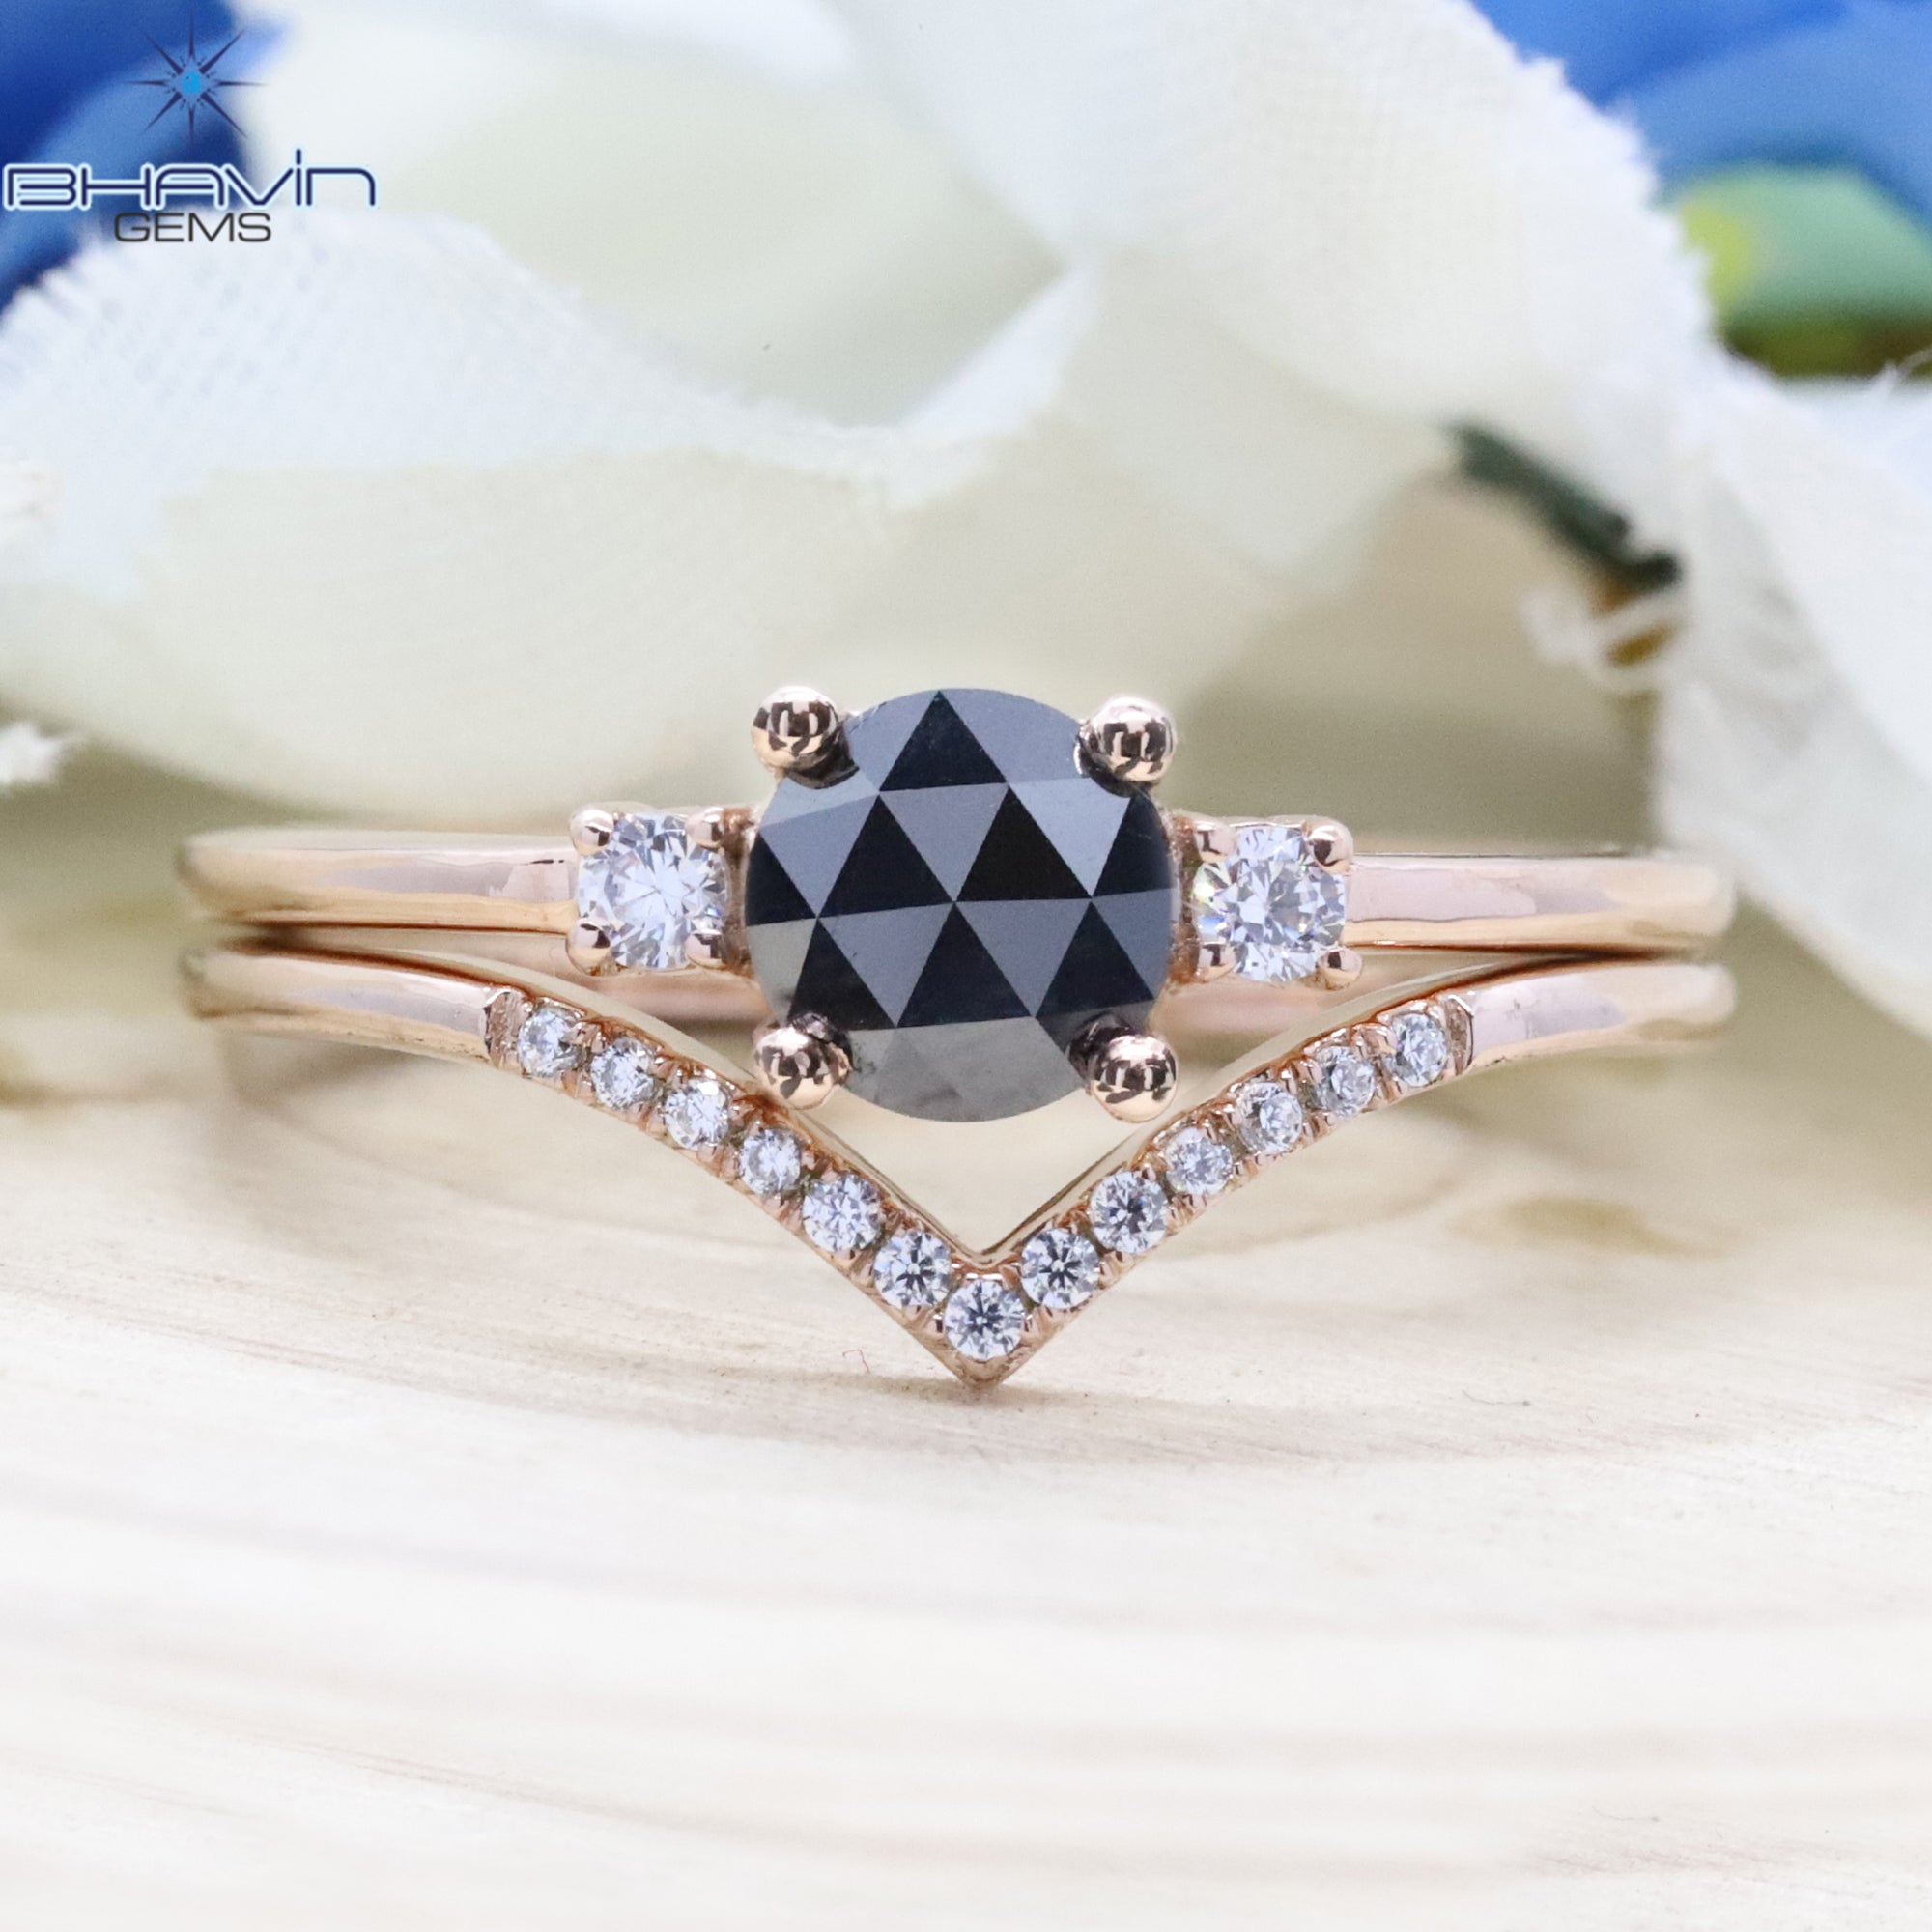 ラウンド ローズカット ダイヤモンド、ブラック ダイヤモンド、天然ダイヤモンド リング、婚約指輪